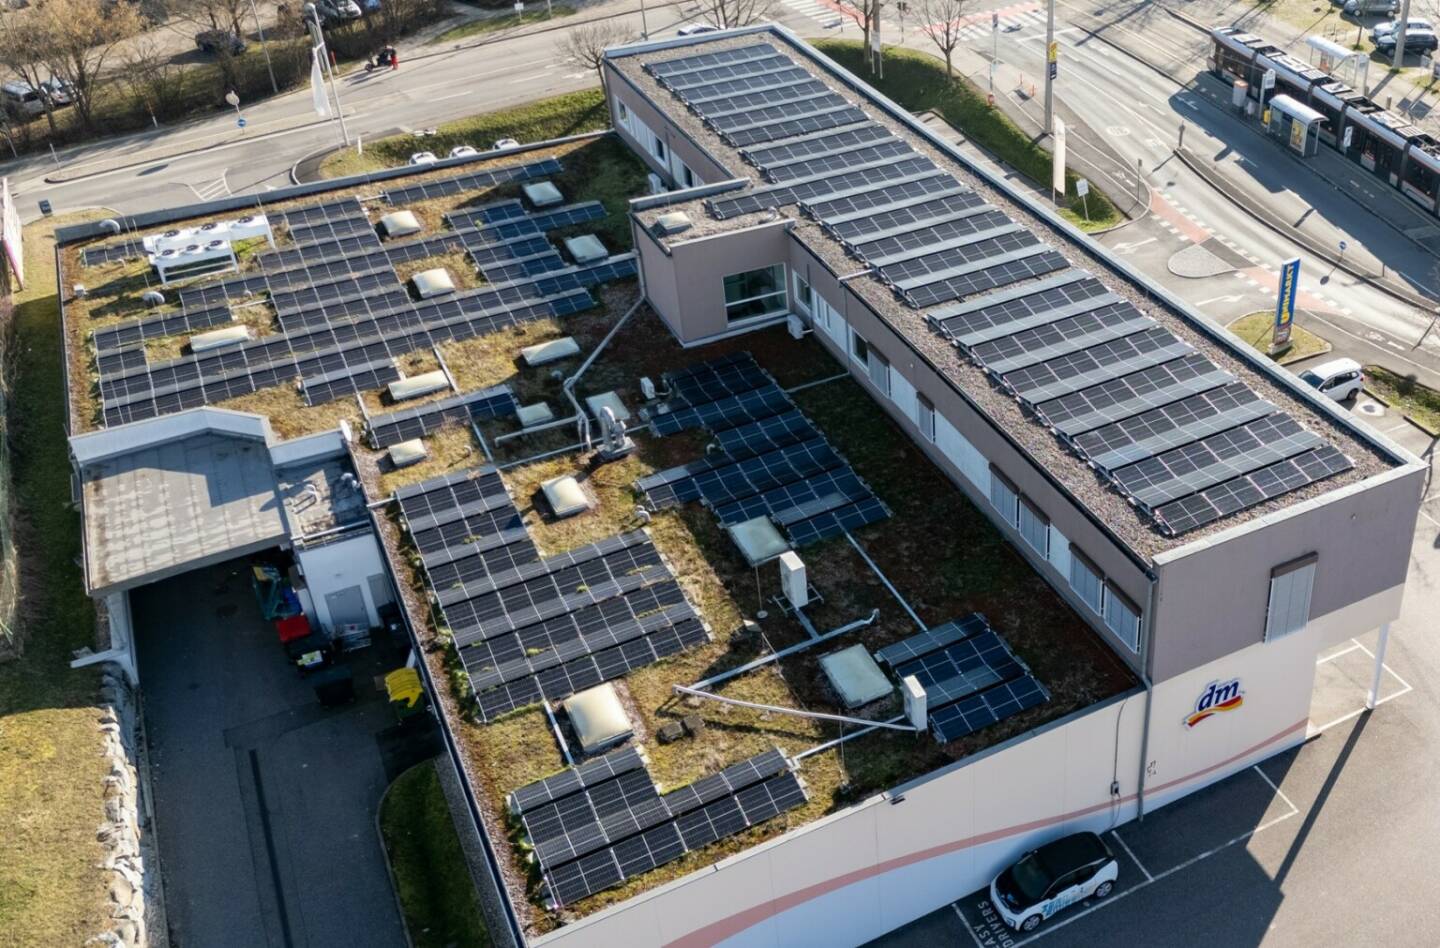 HYPO OÖ und LINZ AG realisieren beim Fachmarktzentrum Ebelsberg eine innovative Sonnenstromlösung. Durch die PV-Anlage werden etwa 36 Tonnen CO2 jährlich eingespart. © LINZ AG/Fotokerschi